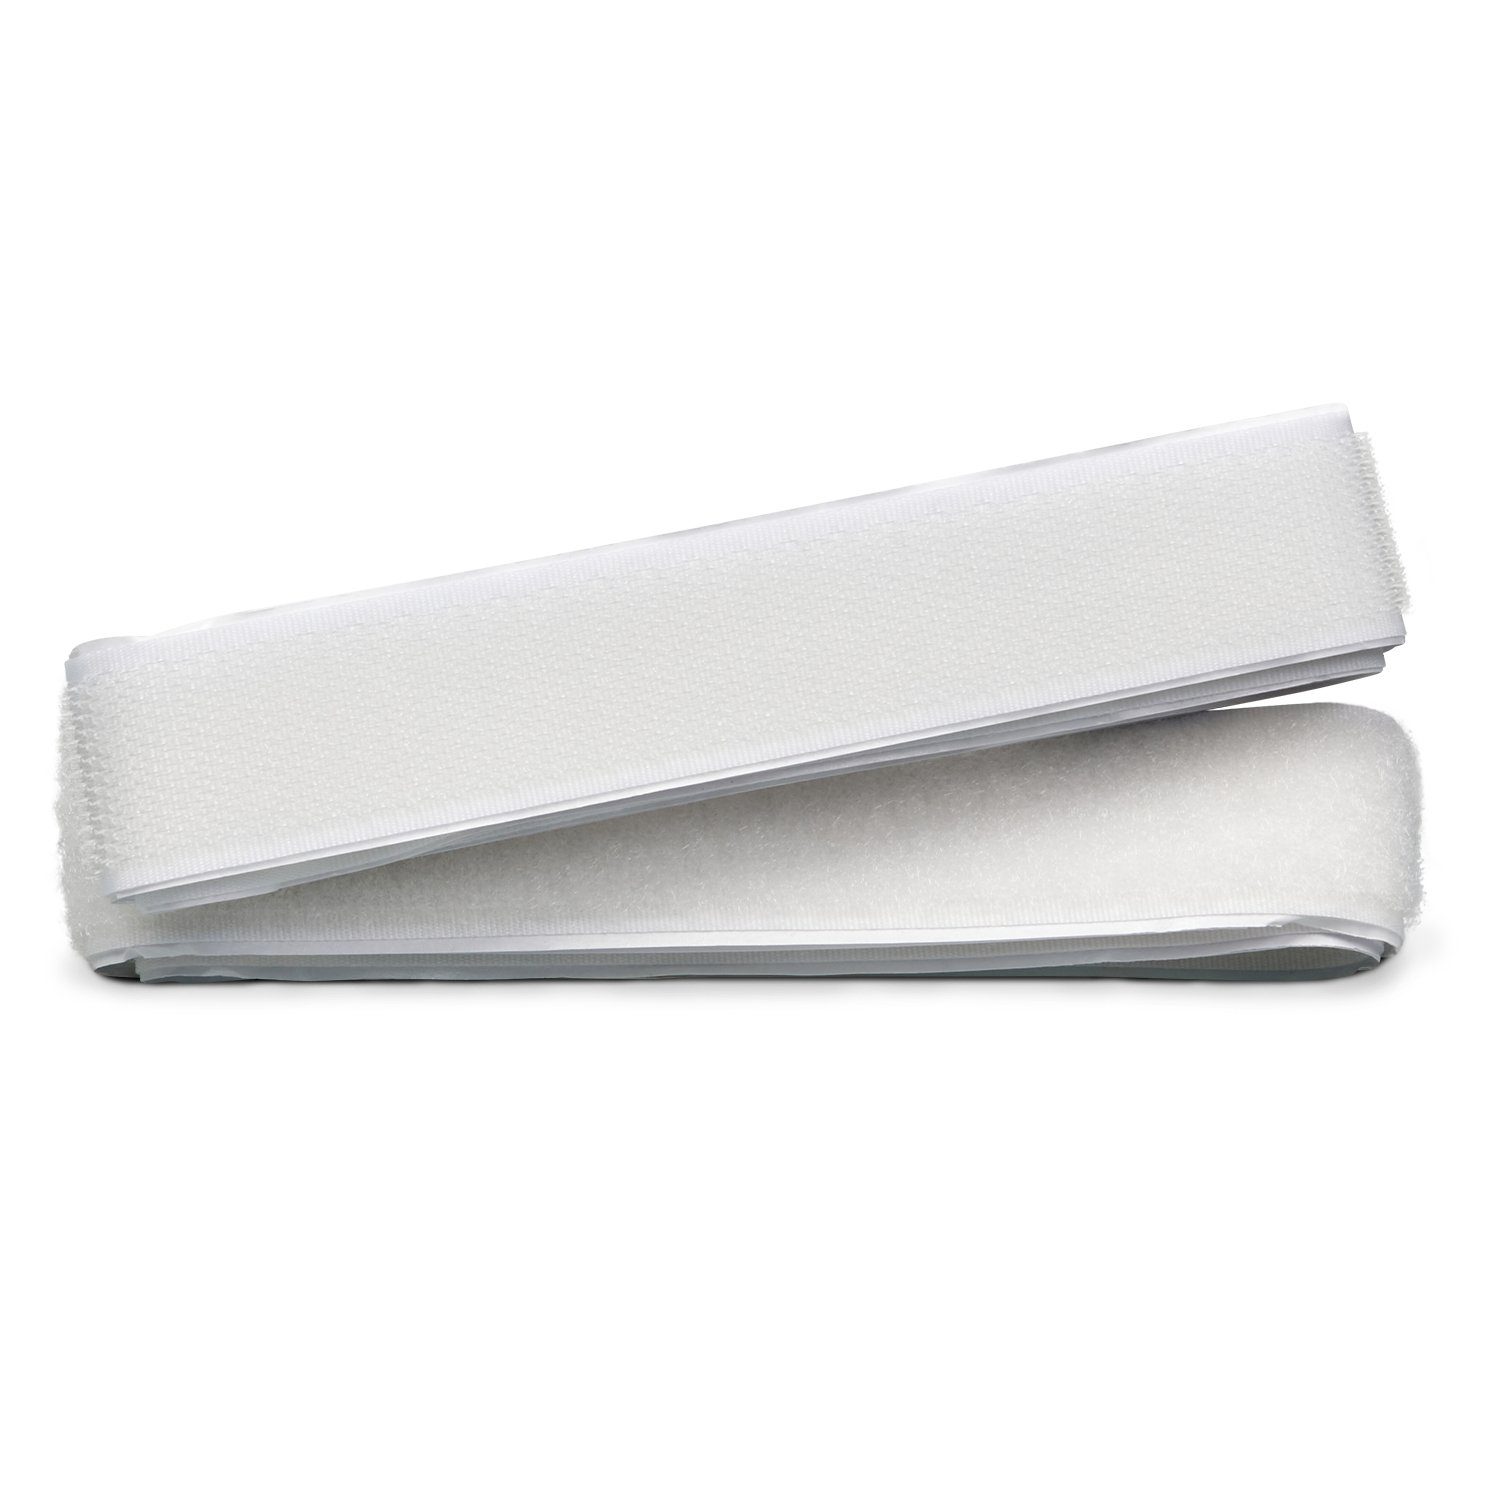 ZADAWERK Klett-Klebeband Klettverschluss - Klettband selbstklebend (25 mm x 100 cm, weiß) zum Aufkleben, Öffnen und Verschließen zweier Komponenten